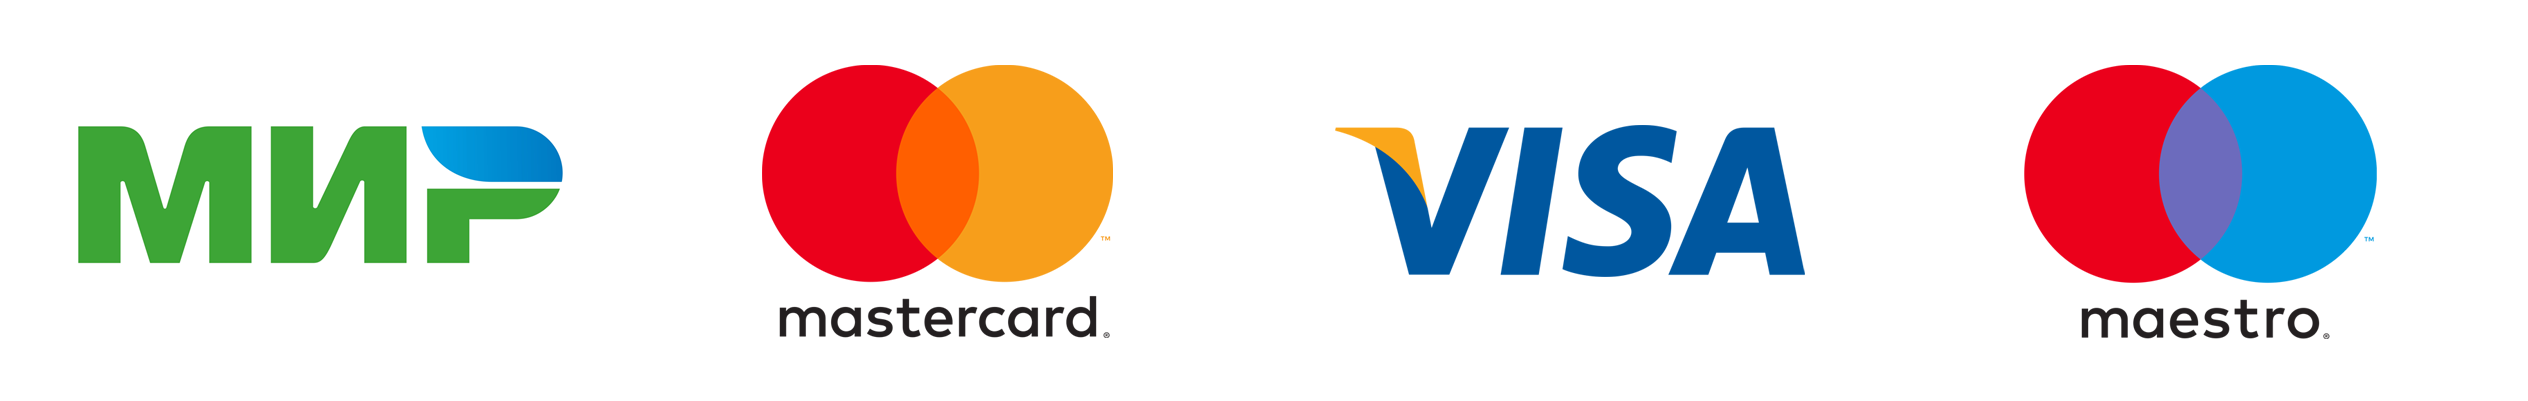 Мастер карт мир. Мастеркард маэстро. Visa MASTERCARD мир. Логотип visa MASTERCARD. Visa MASTERCARD Maestro логотип.